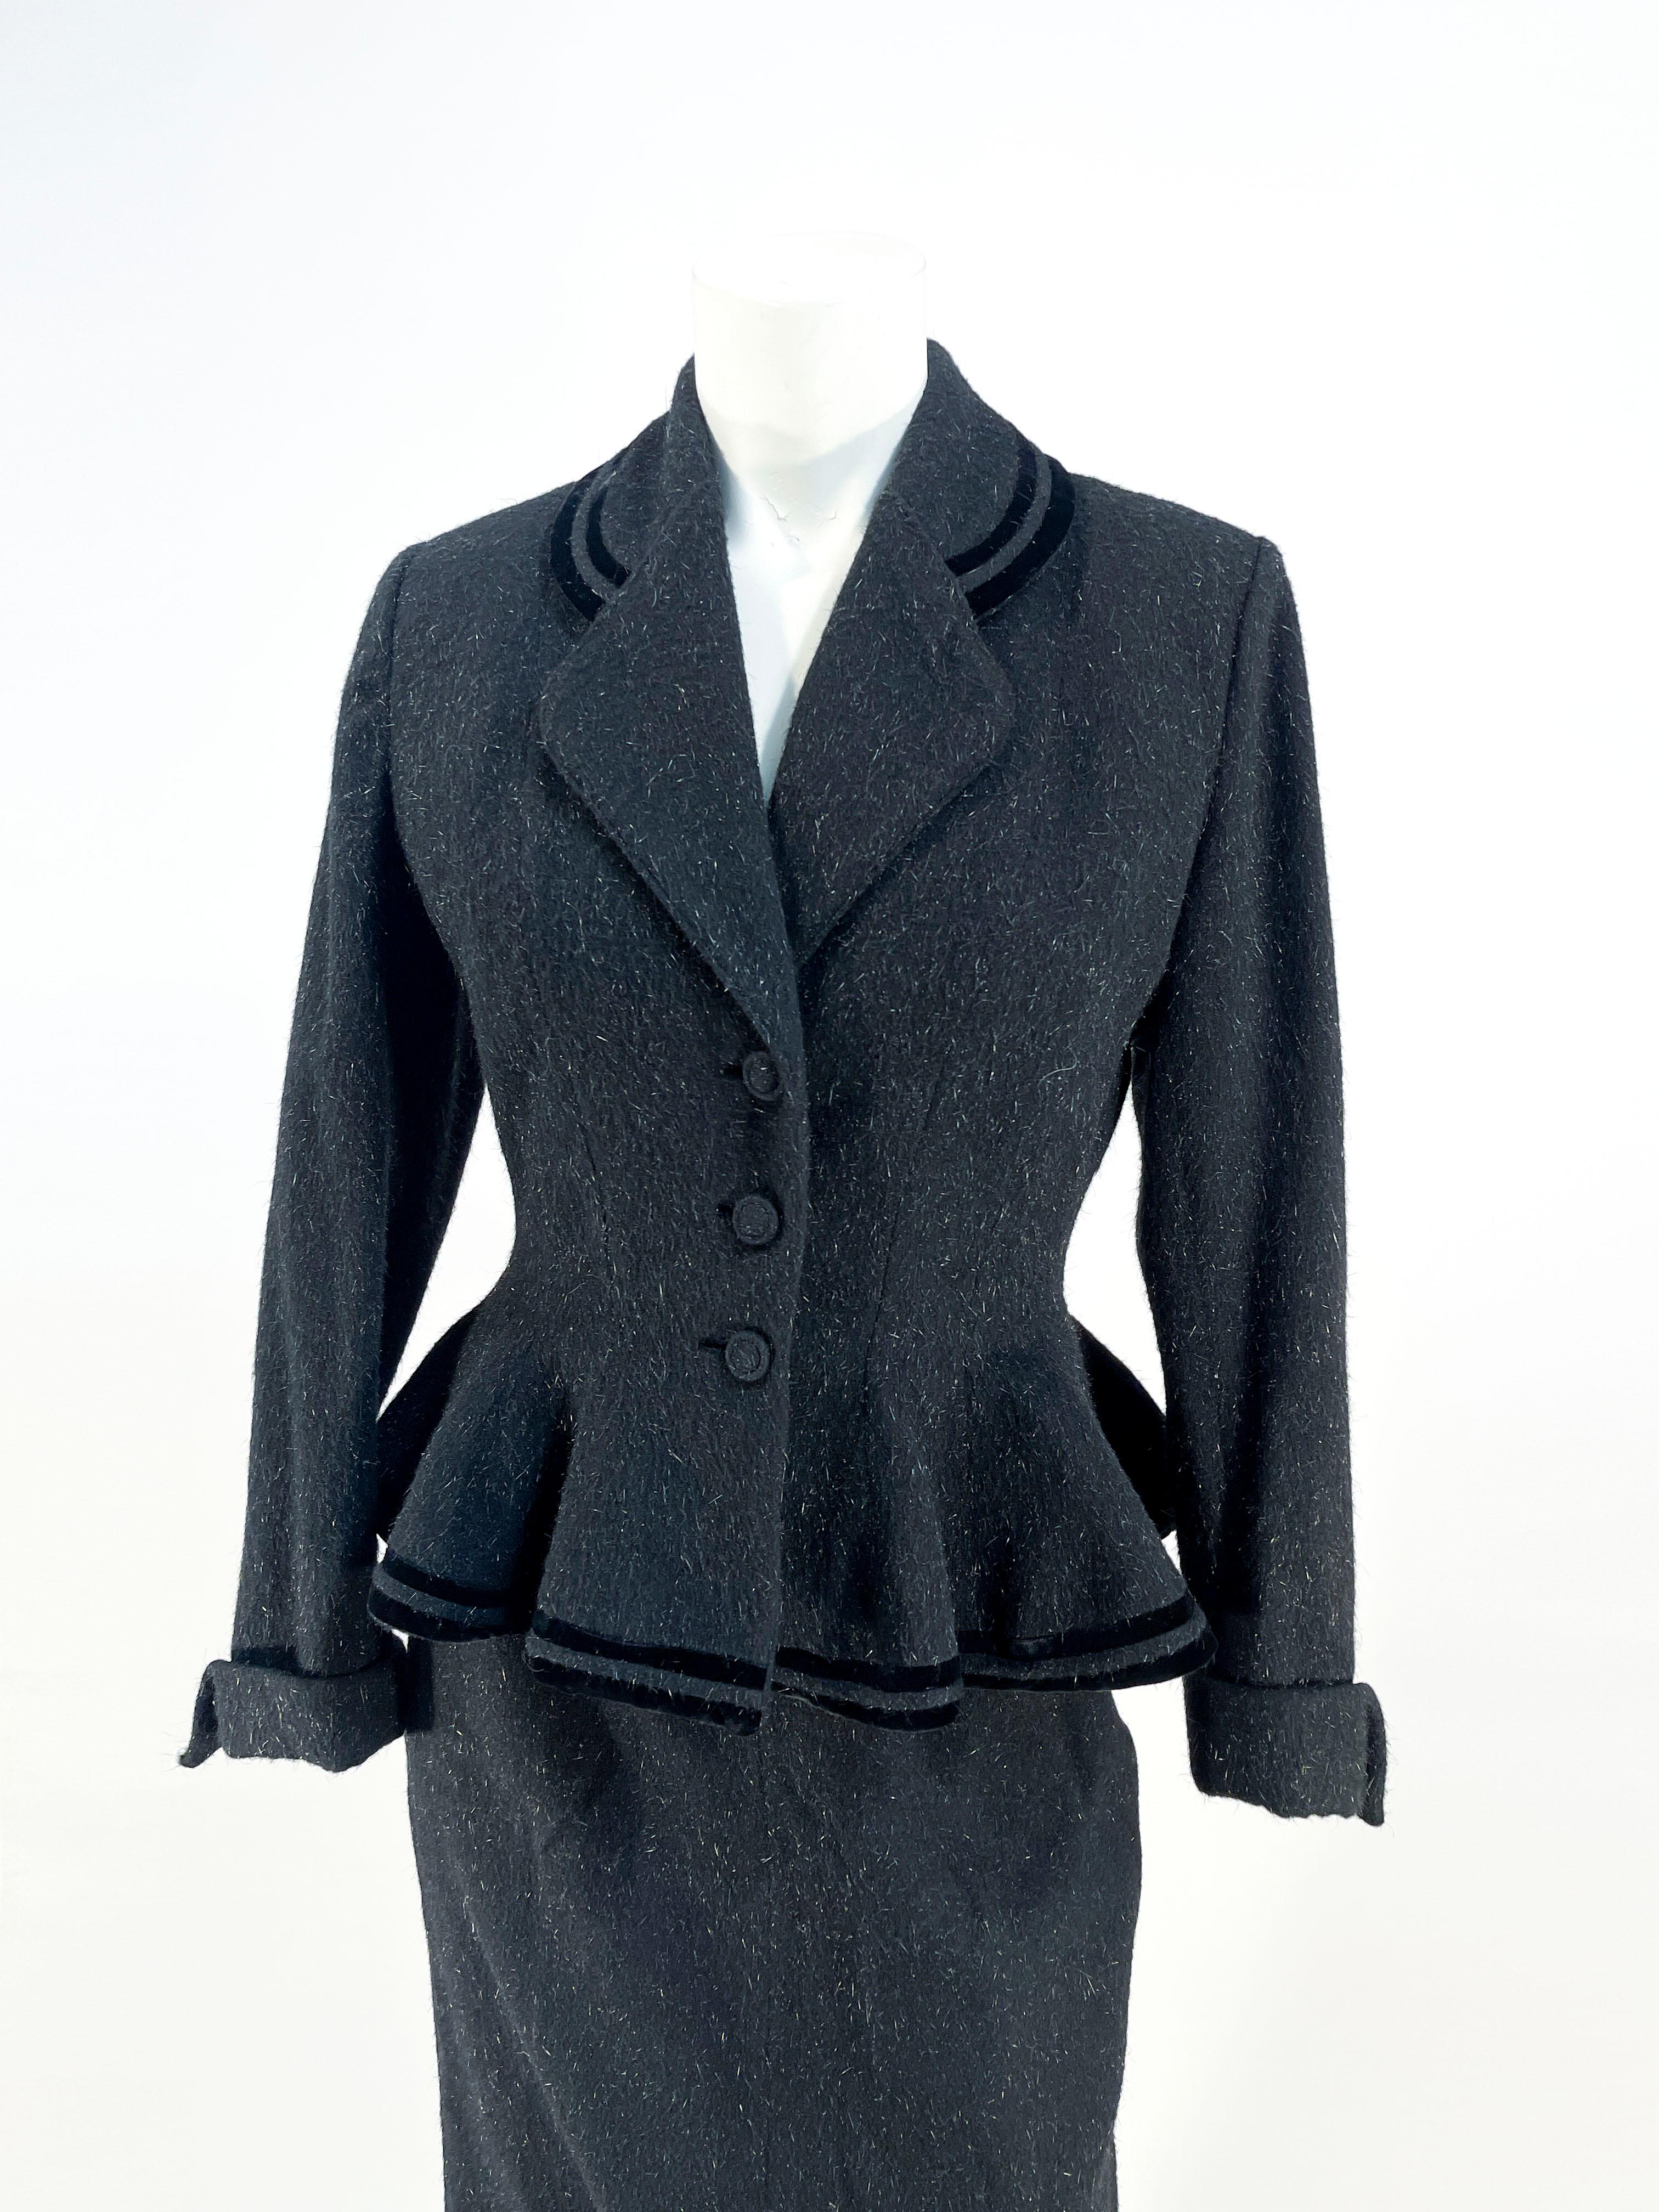 Ende der 1940er bis Anfang der 1950er Jahre Schwarzer Lilli Ann Anzug aus gesprenkelter Wolle mit Rock. Die Jacke verfügt über einen Kragen mit Kerbe, verdeckte Designerknöpfe, eingelassene Knopflöcher, doppelte Samtstreifen, die Farbe und Saum